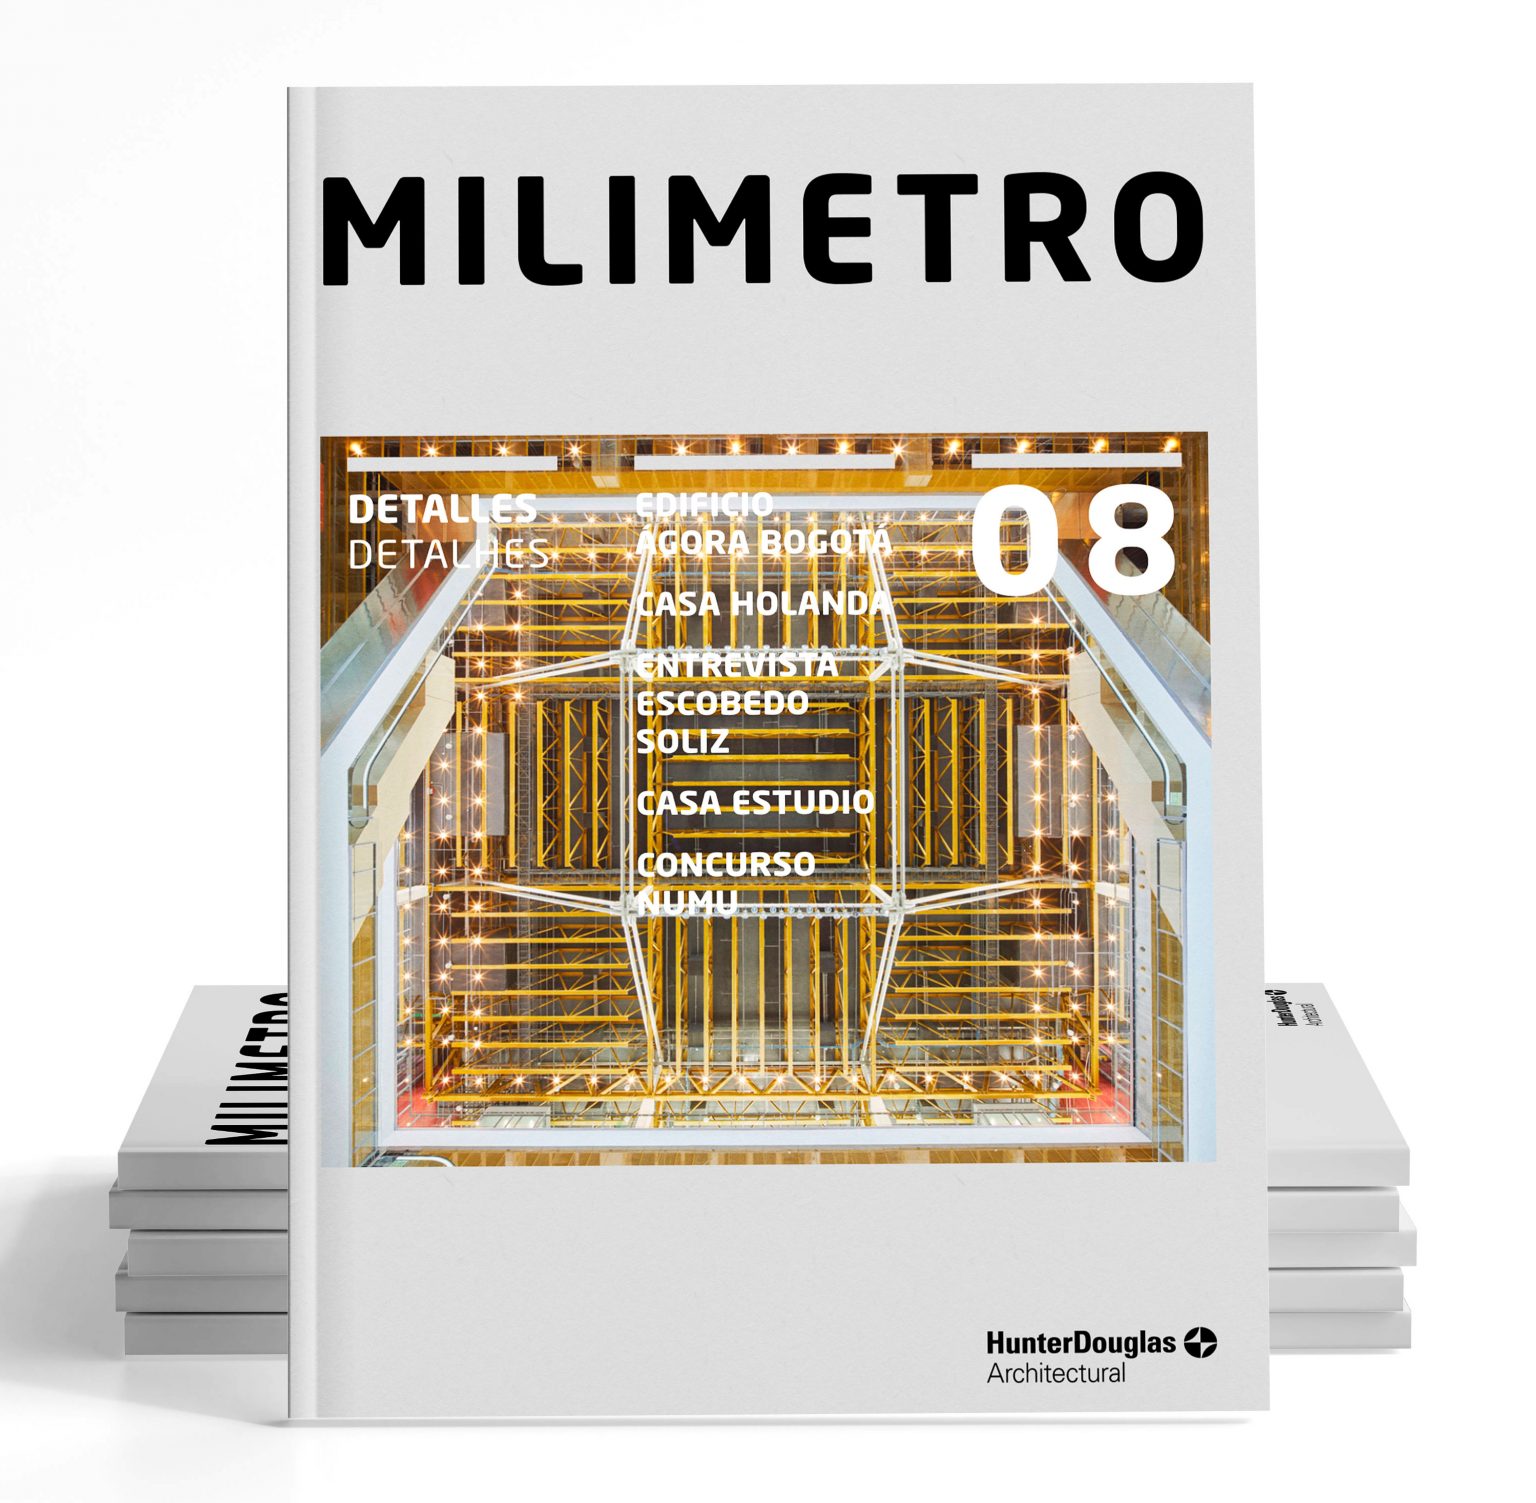 Revista Milímetro 08: DETALLES, entre mockups y prototipos mm8 destacadaAA 1536x1503 1